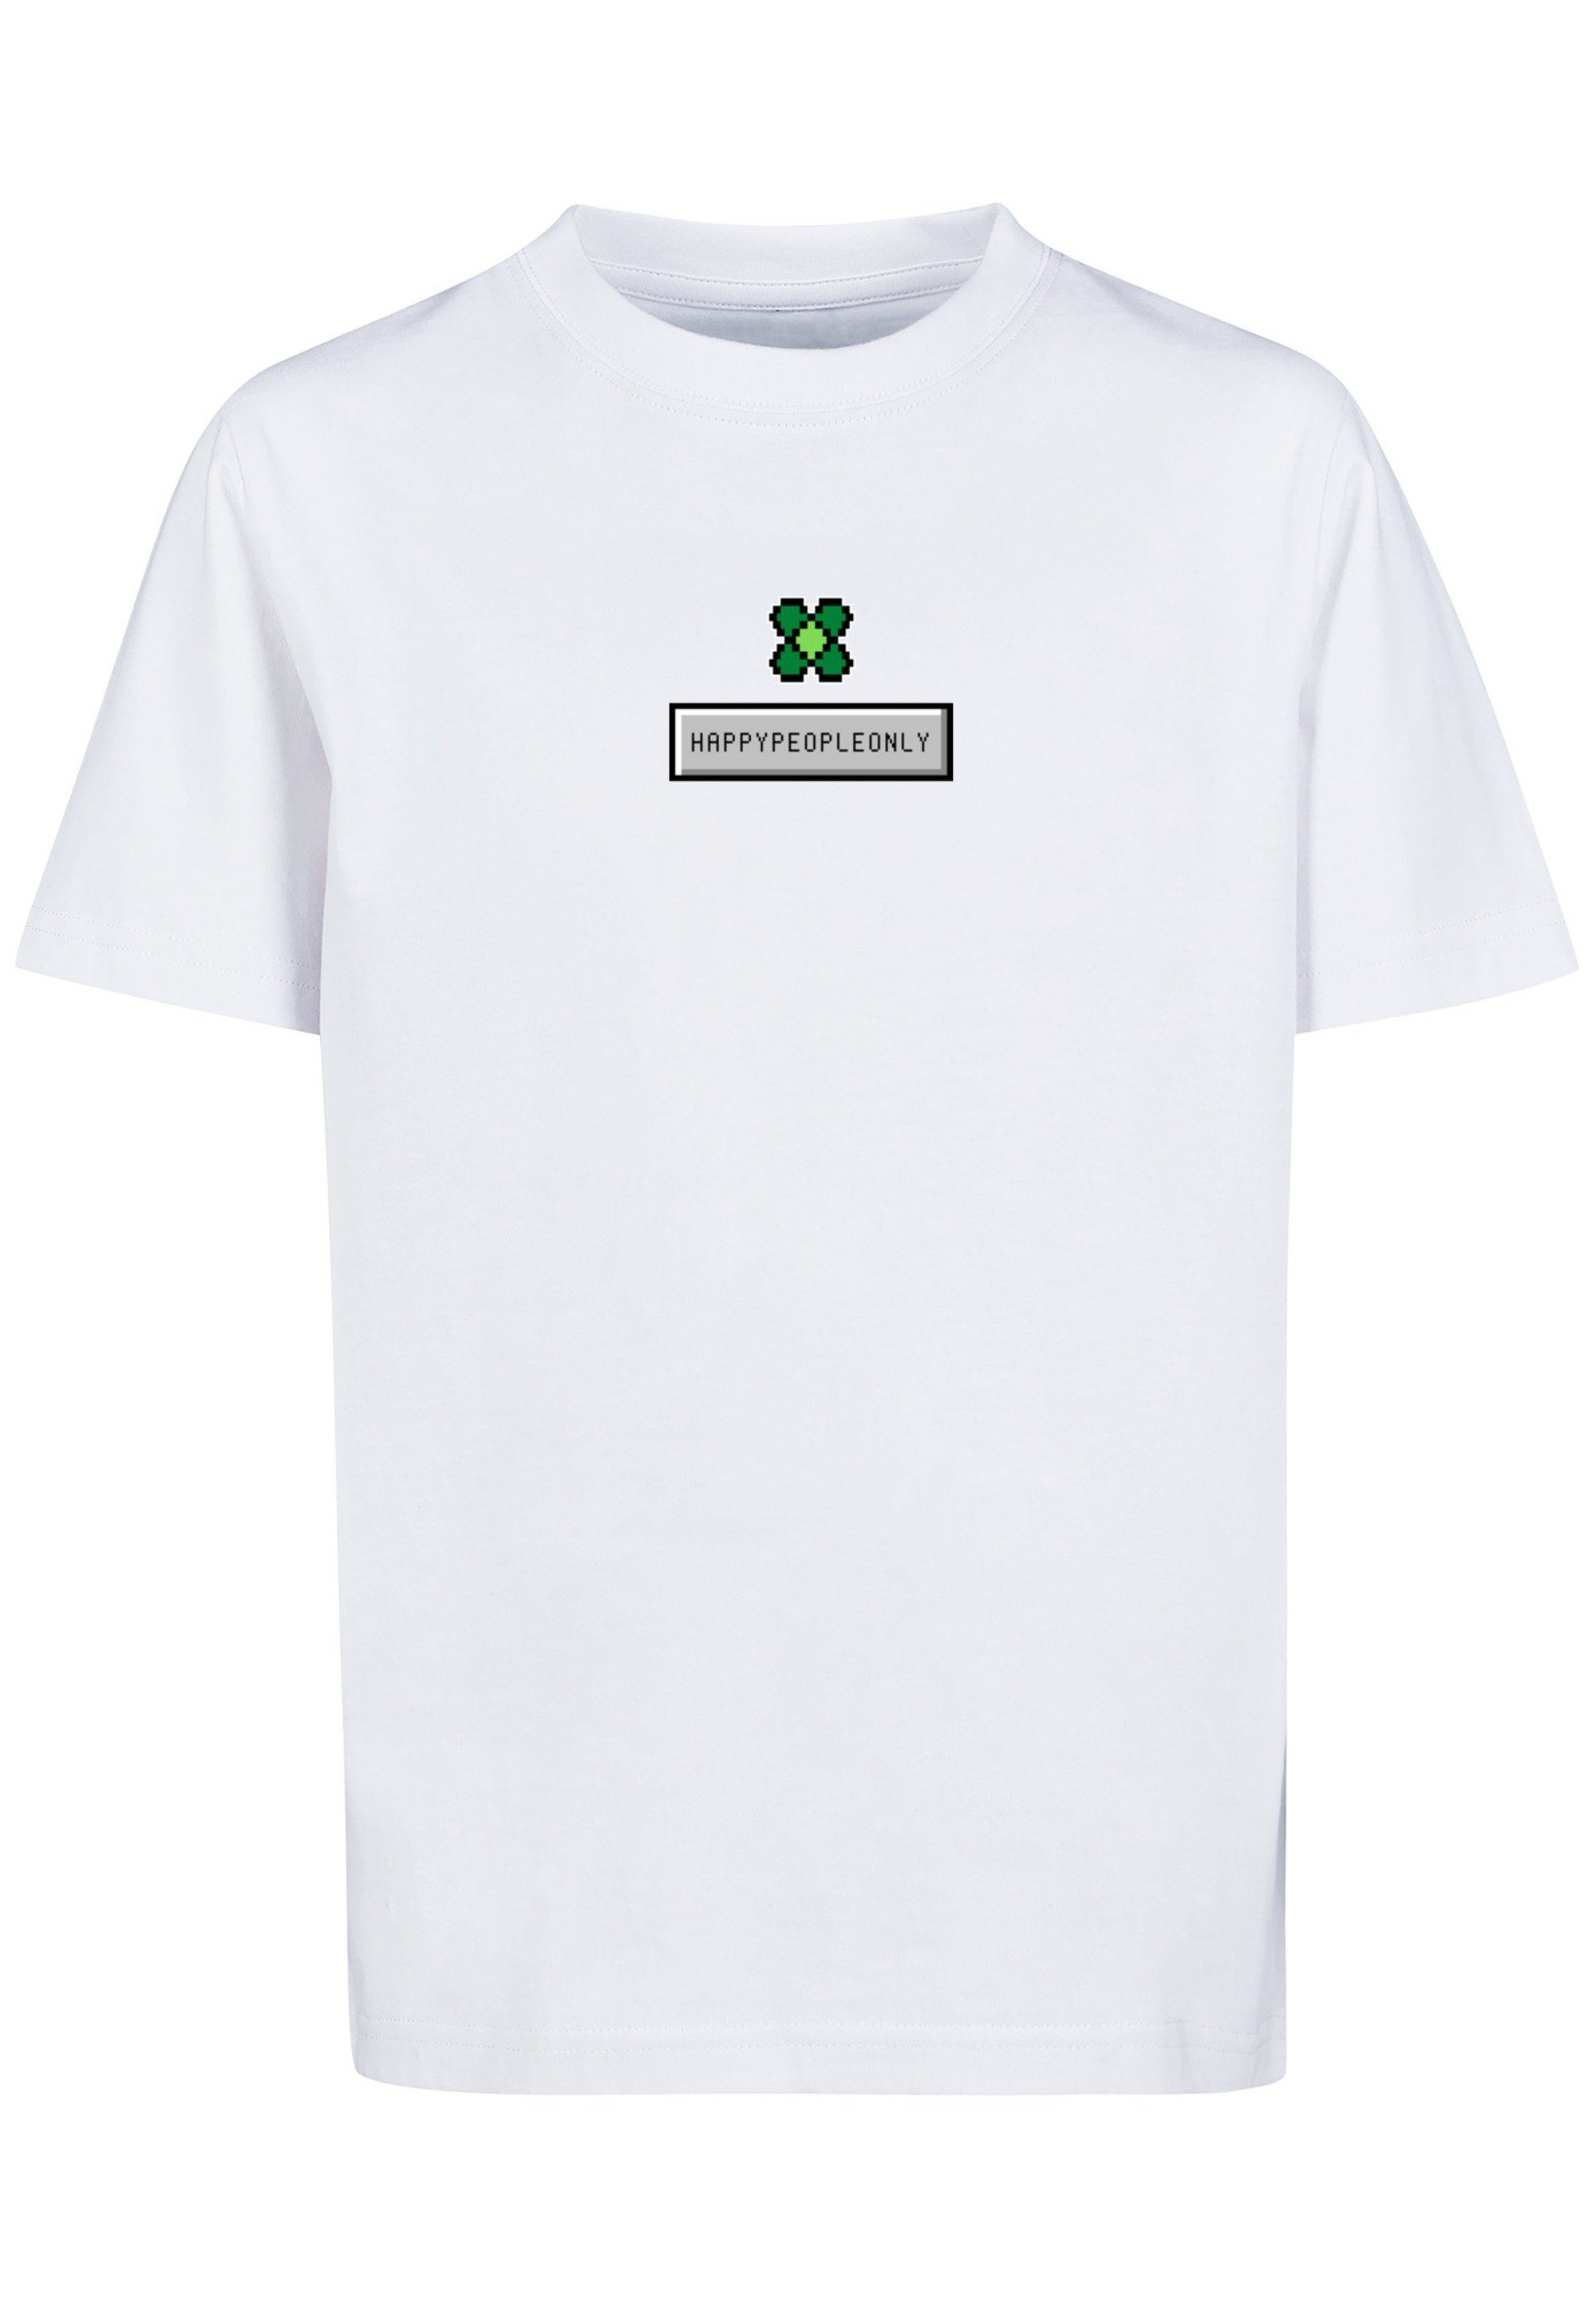 F4NT4STIC T-Shirt Silvester weiß New Pixel Year Happy Print Kleeblatt